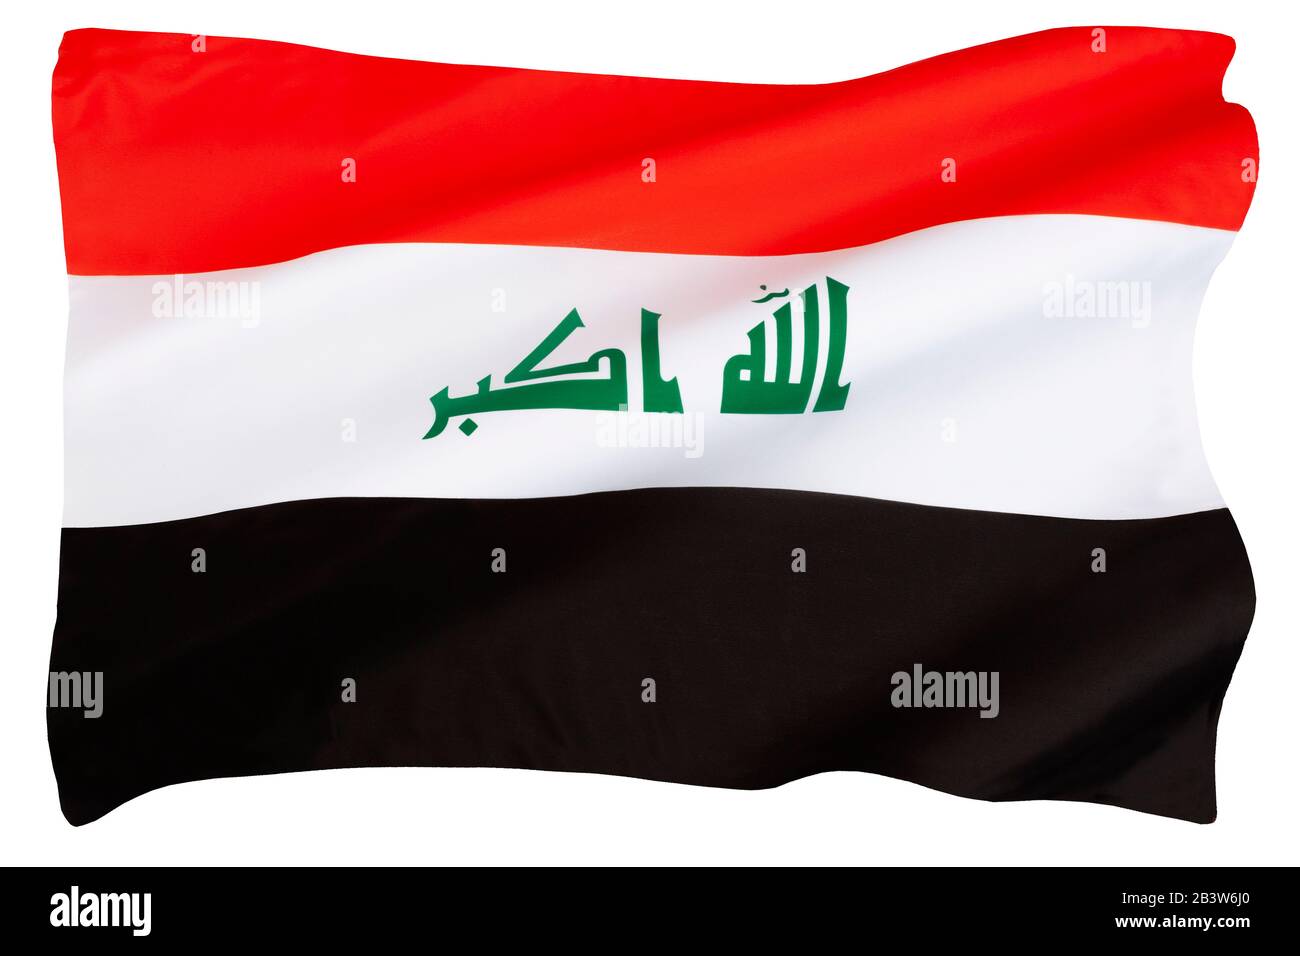 La bandiera dell'Iraq - comprende le tre strisce orizzontali rosse, bianche e nere della bandiera di Liberazione Araba. Foto Stock